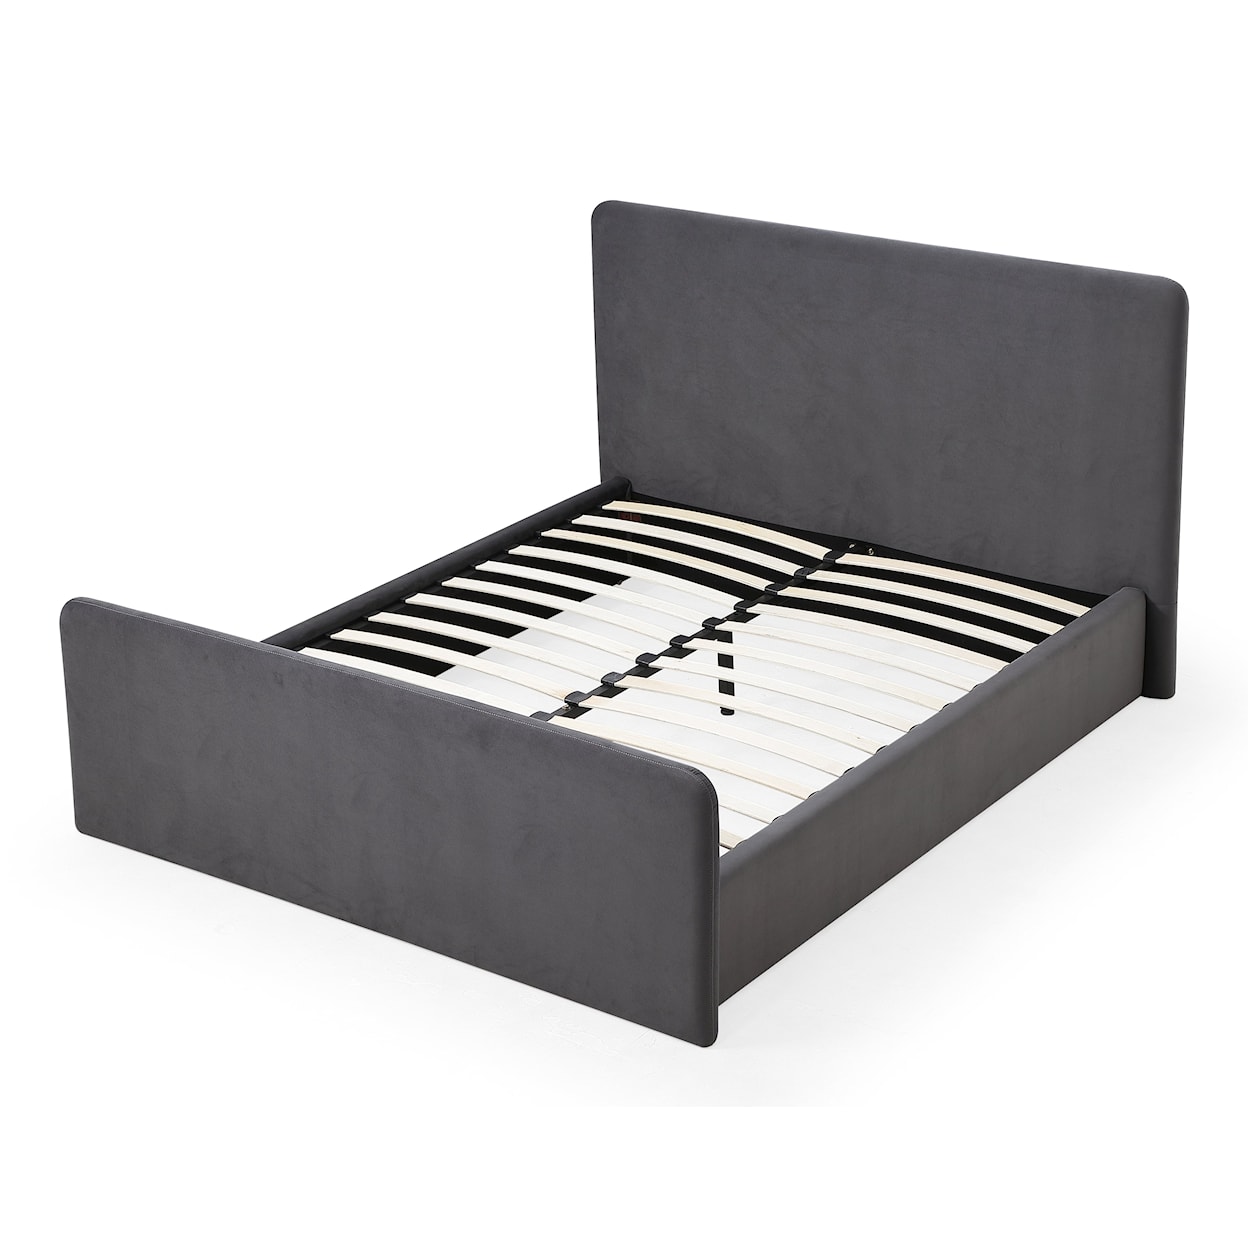 Modus International Elora Upholstered Full Bed